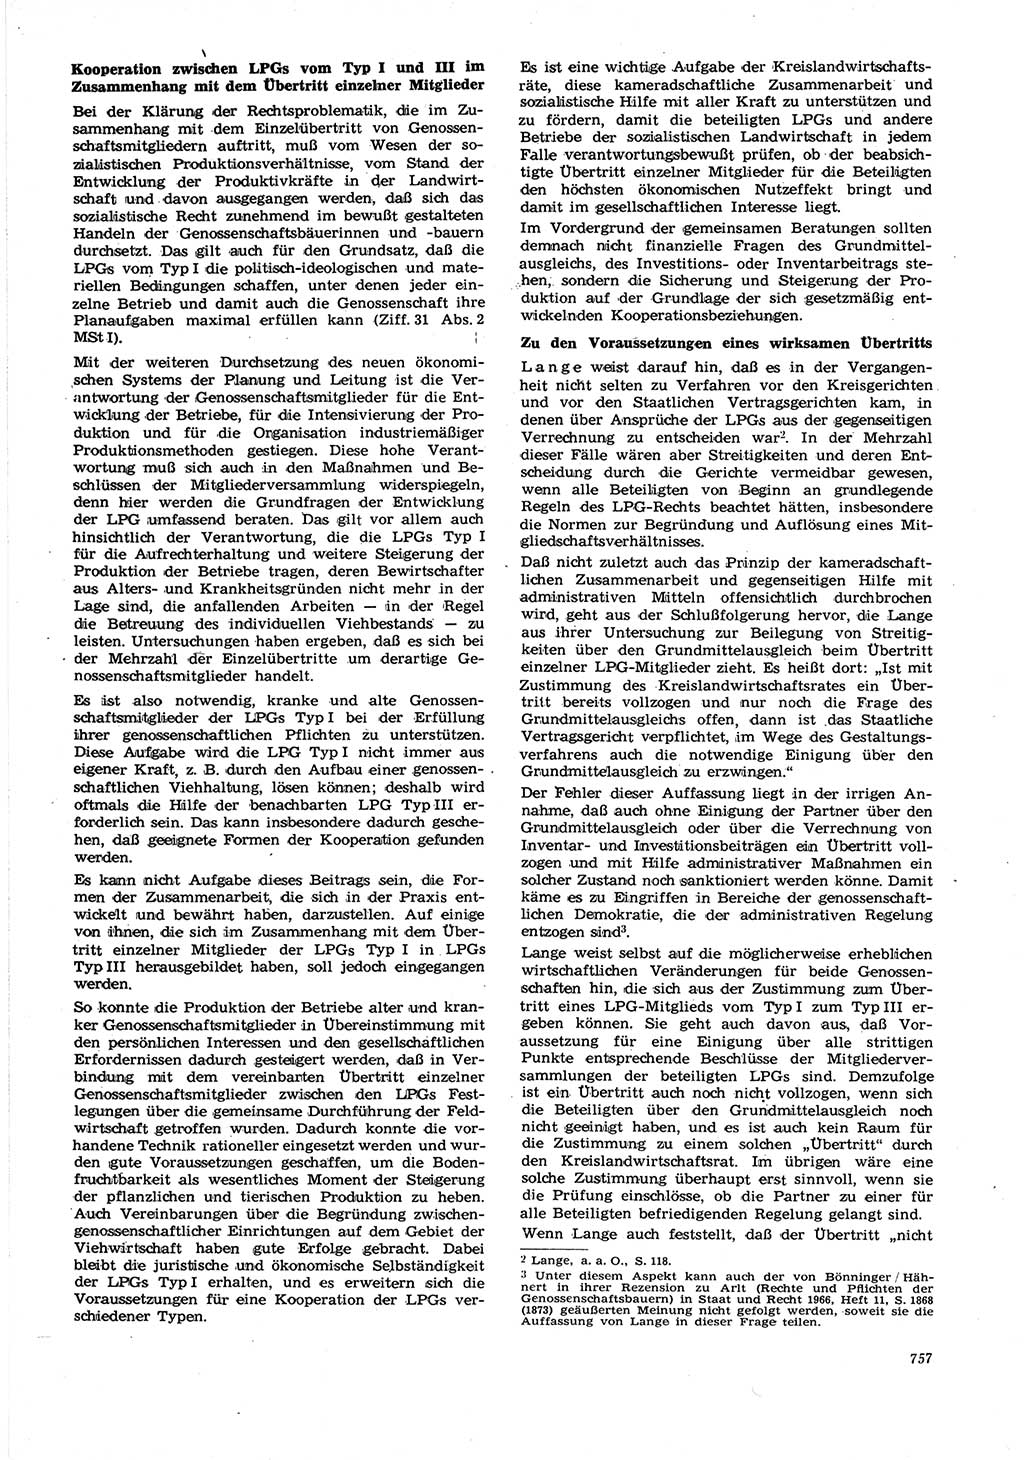 Neue Justiz (NJ), Zeitschrift für Recht und Rechtswissenschaft [Deutsche Demokratische Republik (DDR)], 21. Jahrgang 1967, Seite 757 (NJ DDR 1967, S. 757)